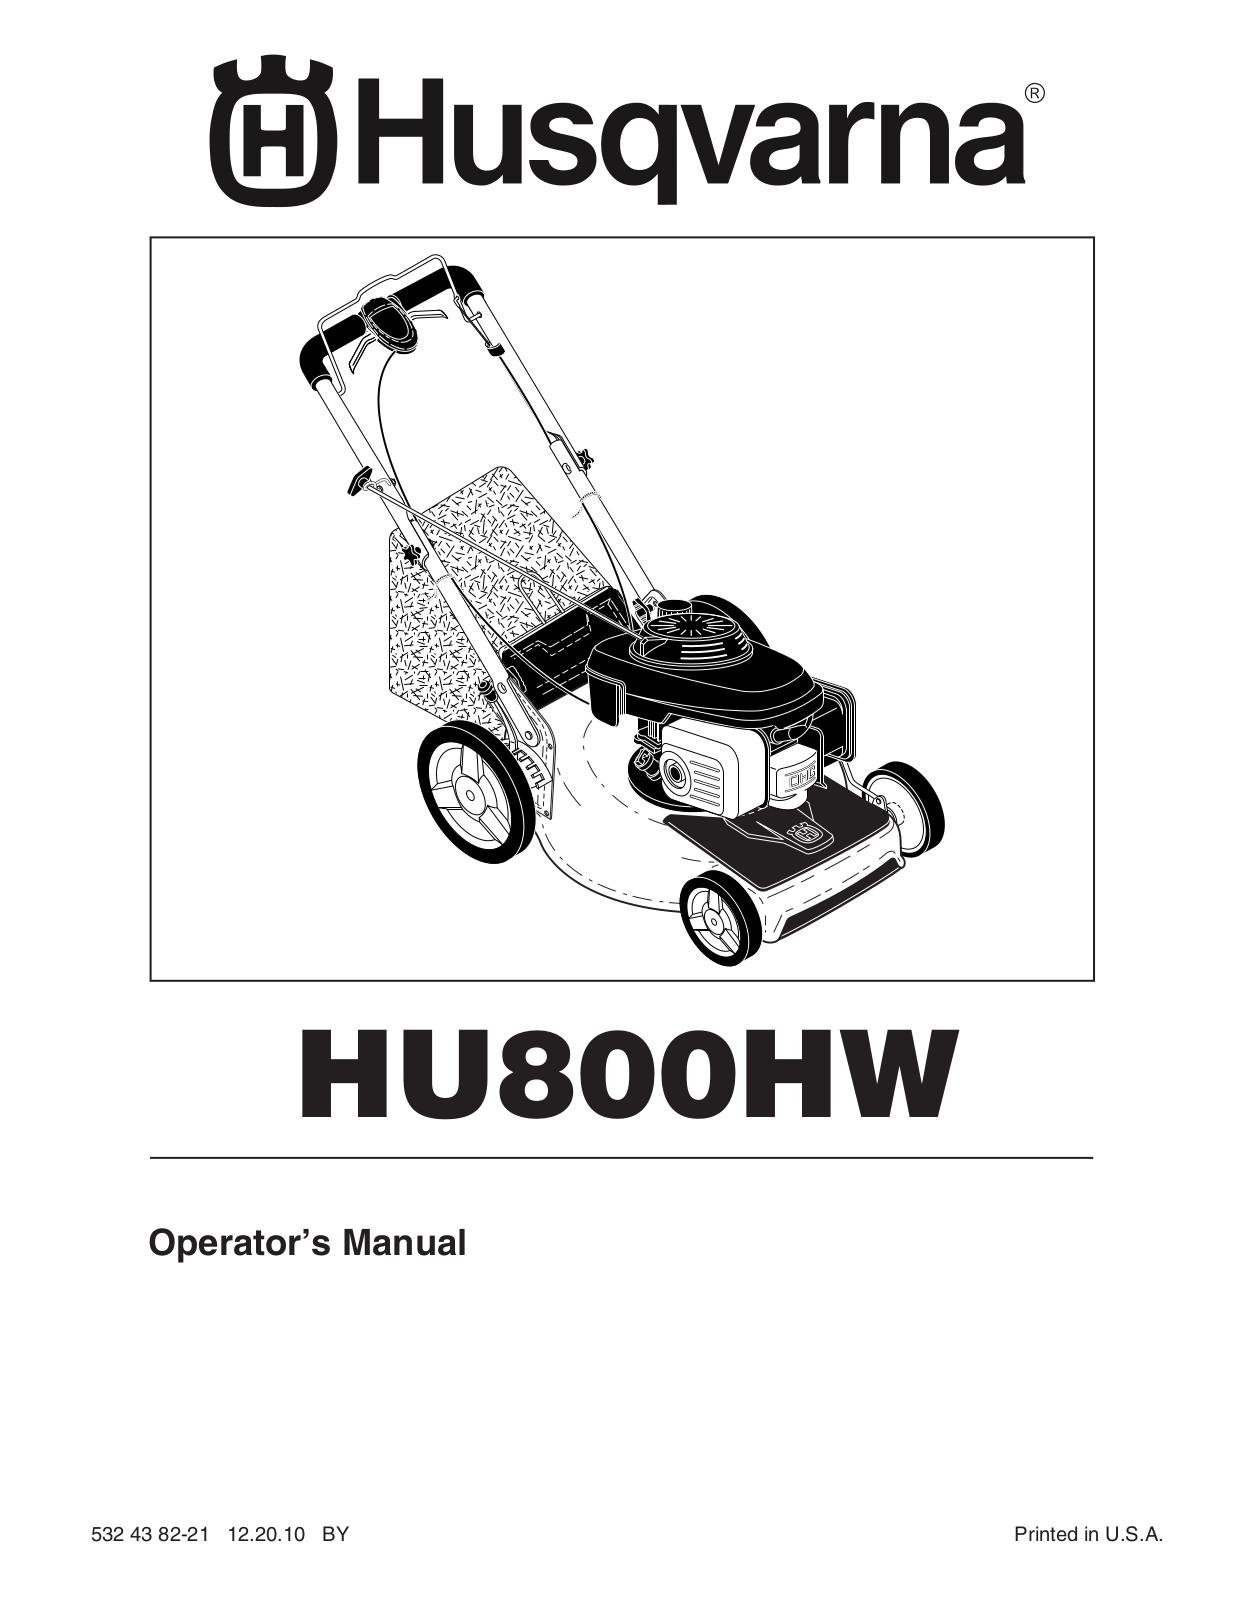 Husqvarna HU800HW Owner's Manual